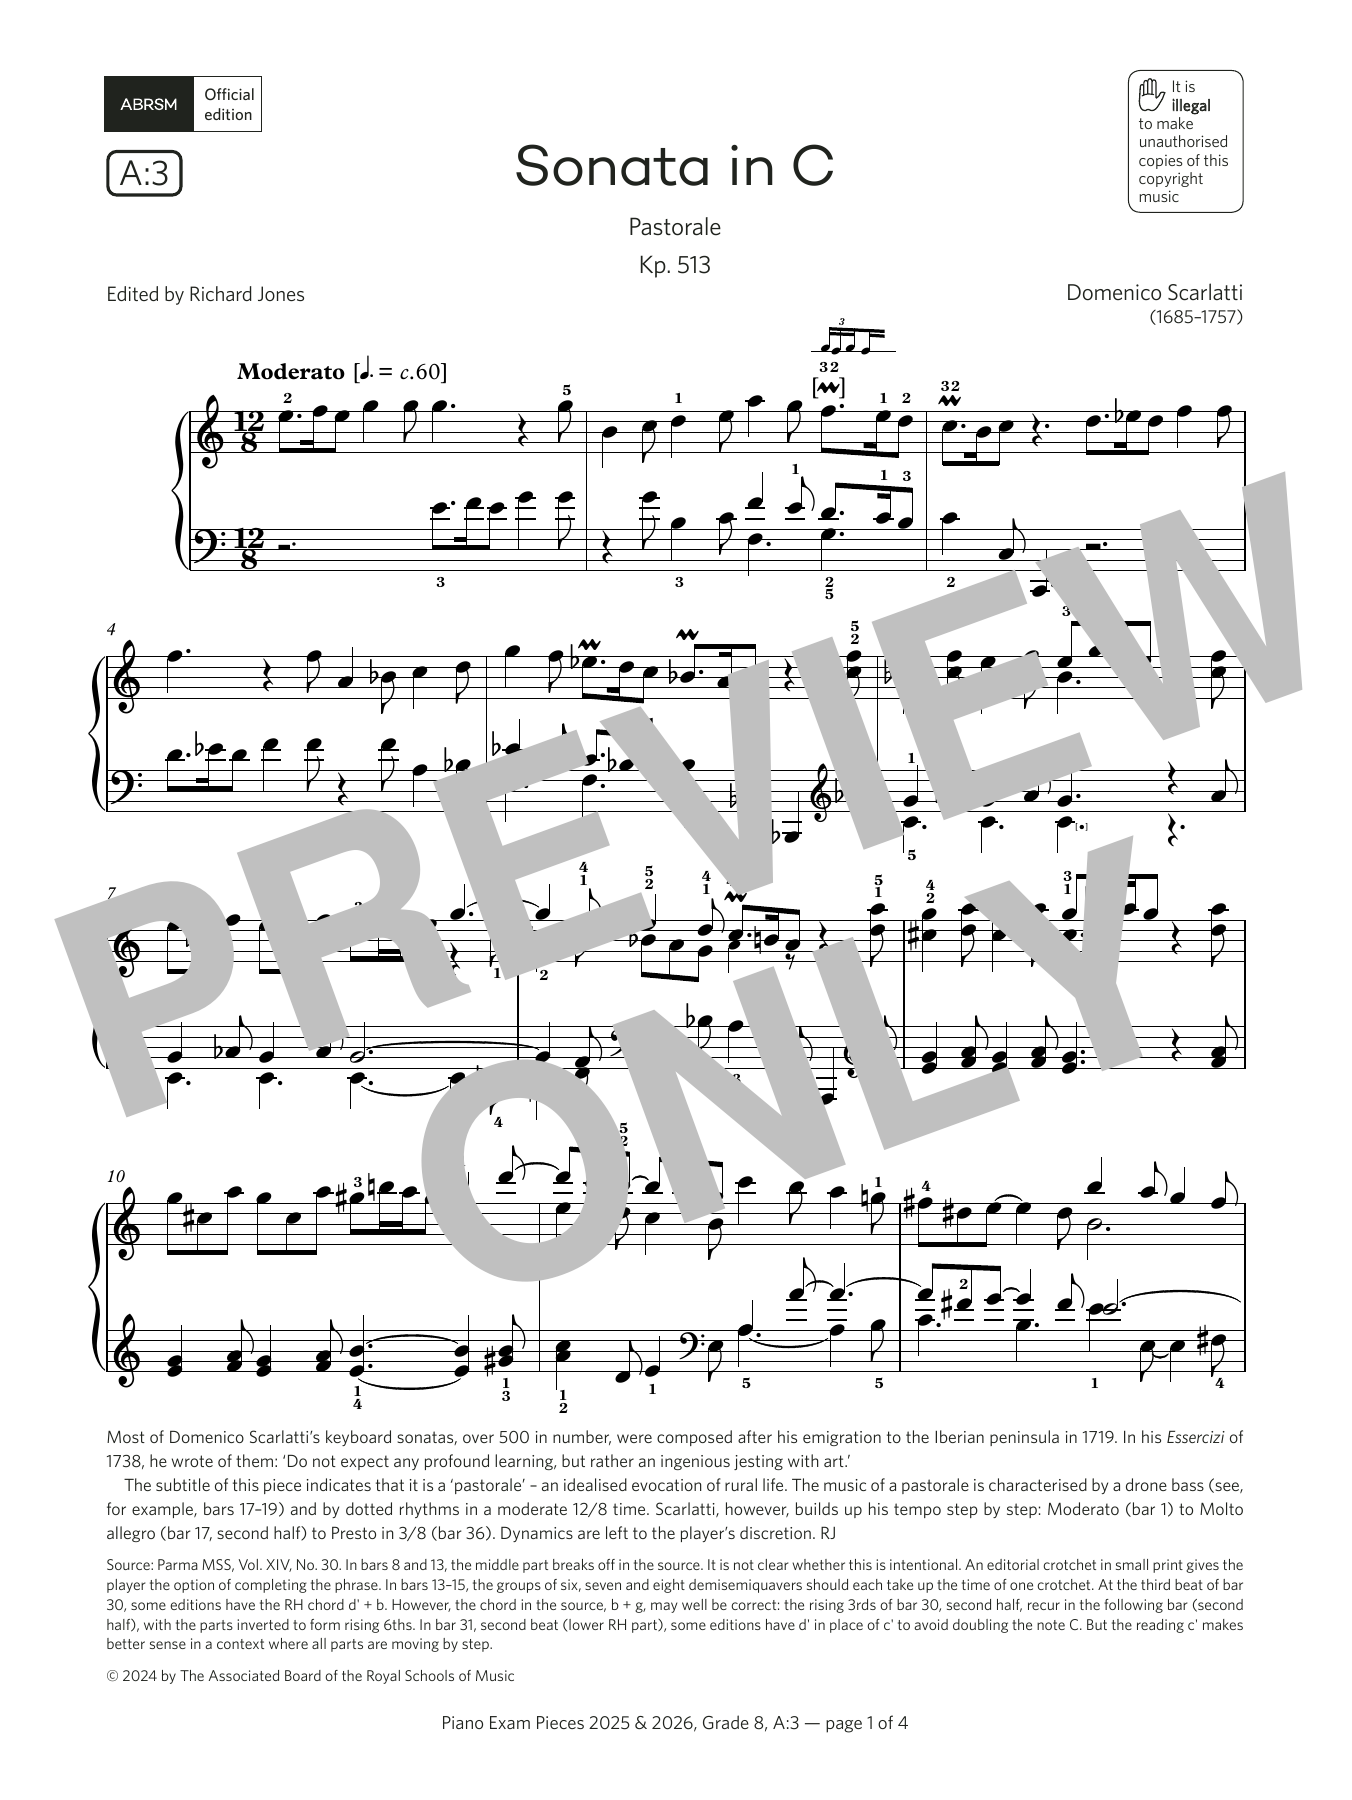 Domenico Scarlatti 'Sonata in C (Grade 8, list A3, from the ABRSM Piano ...